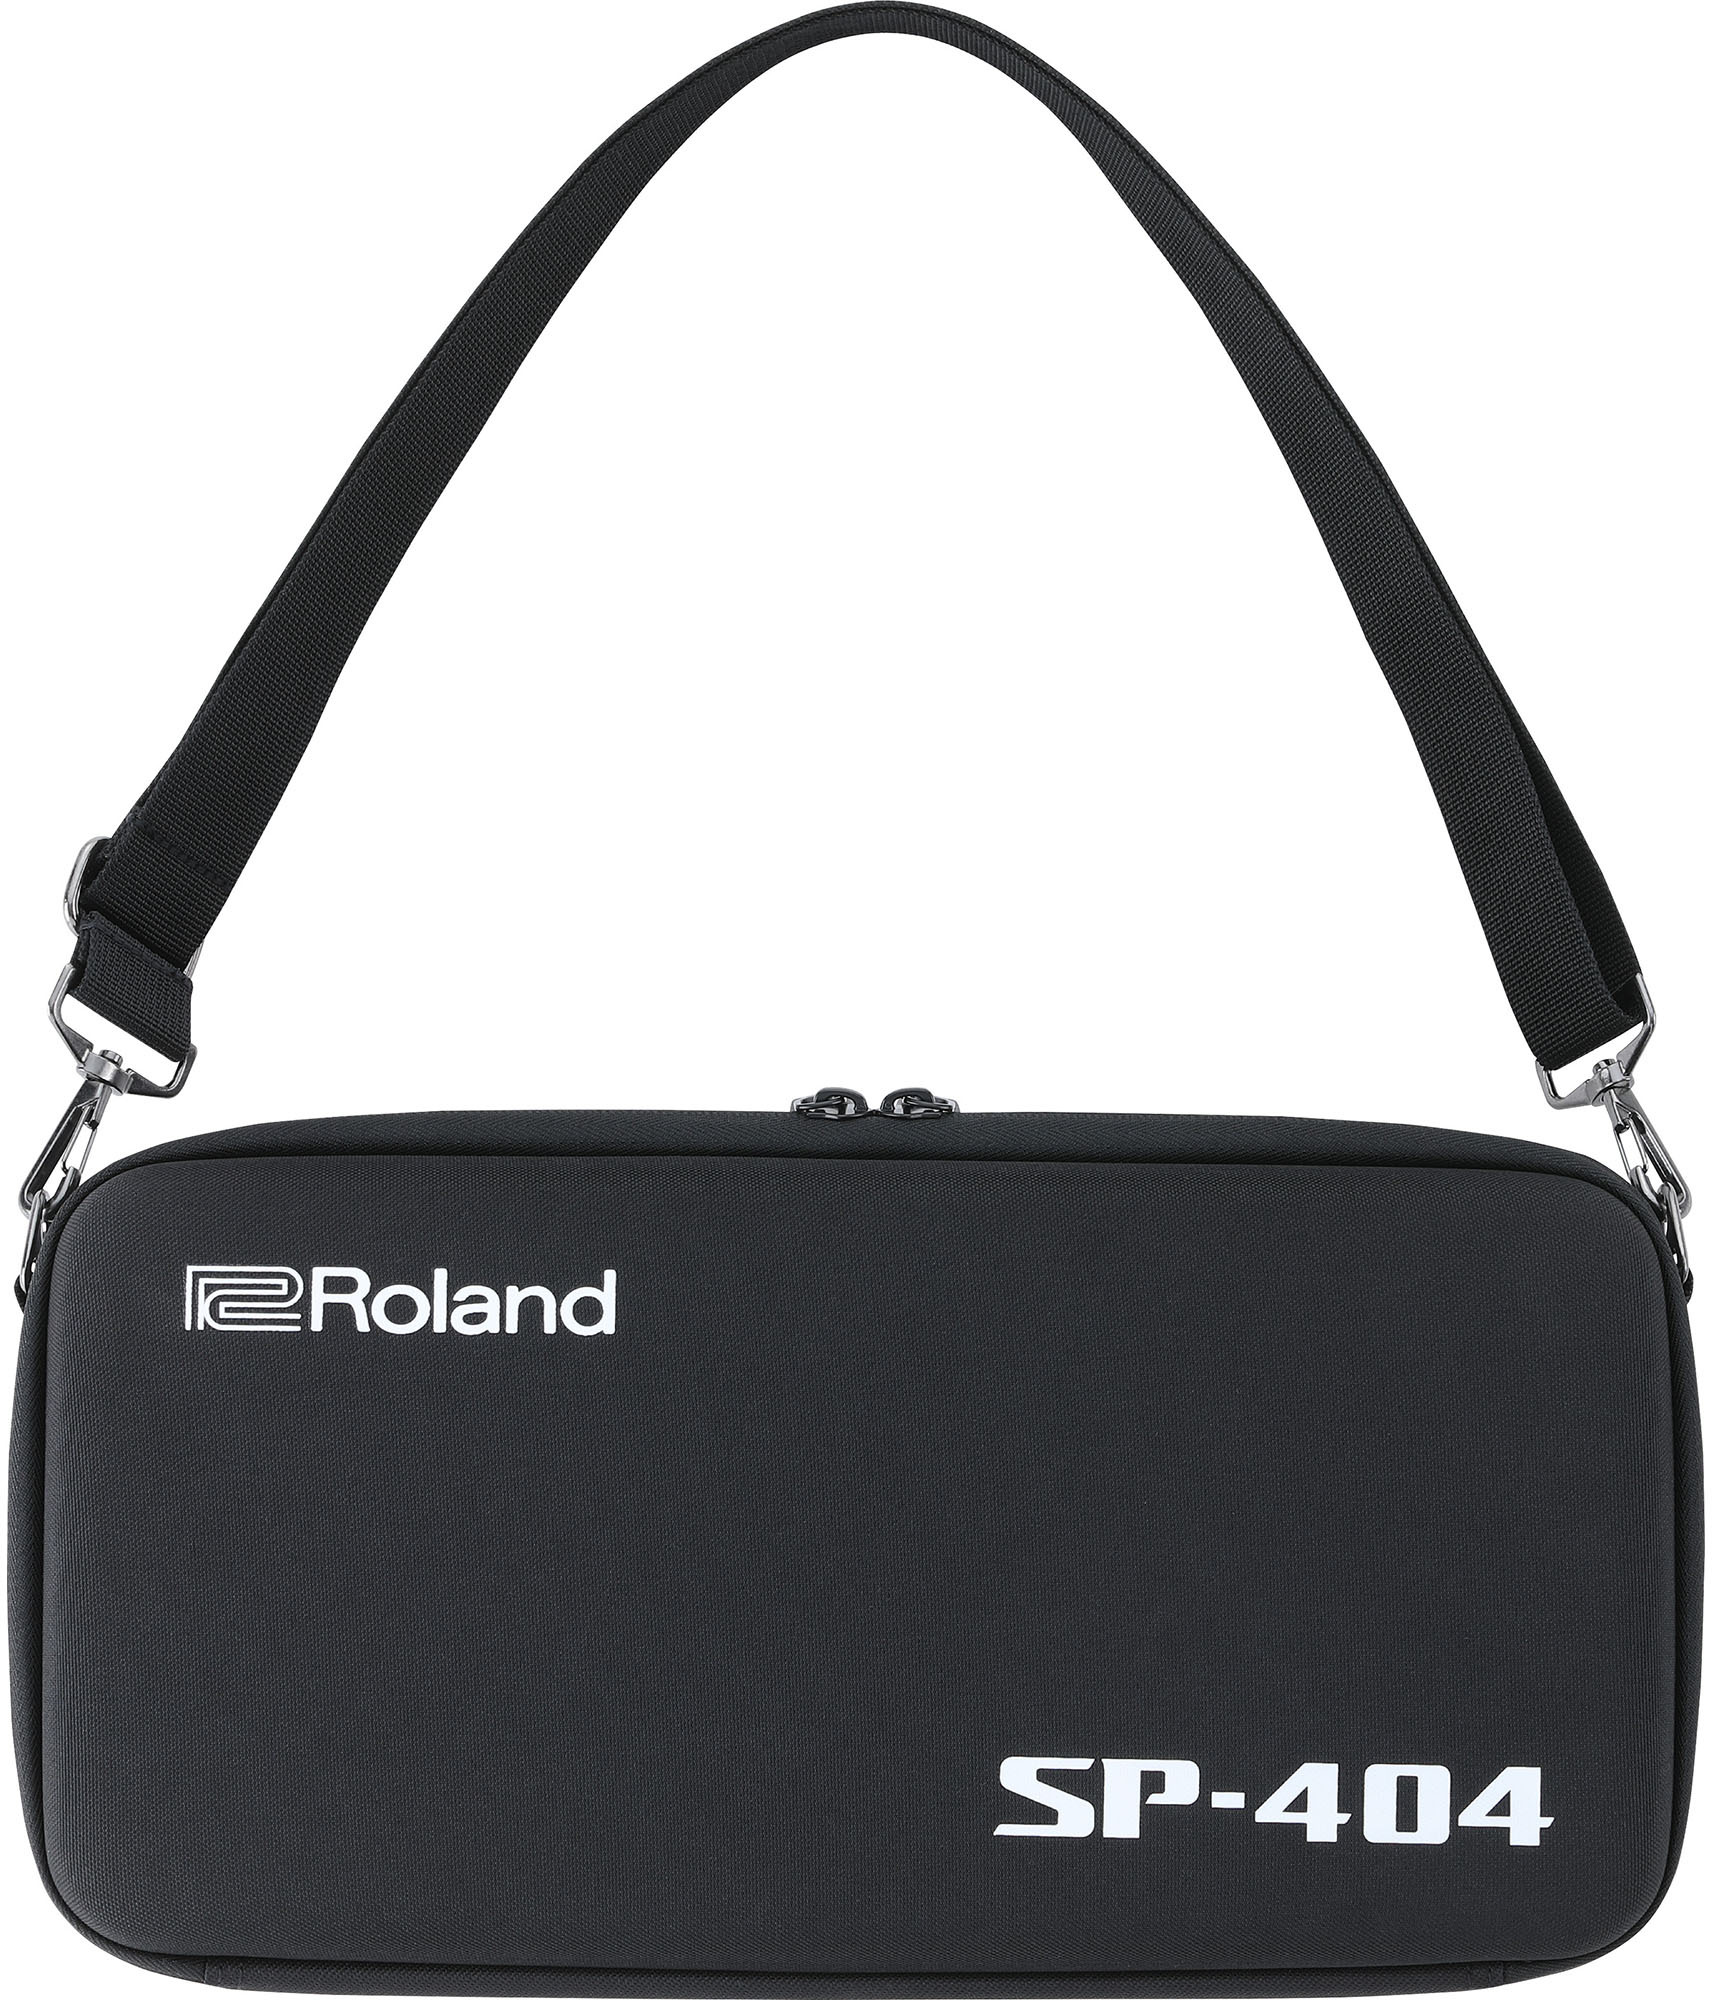 Roland Cb-404 - Tasche für Studio-Equipment - Main picture